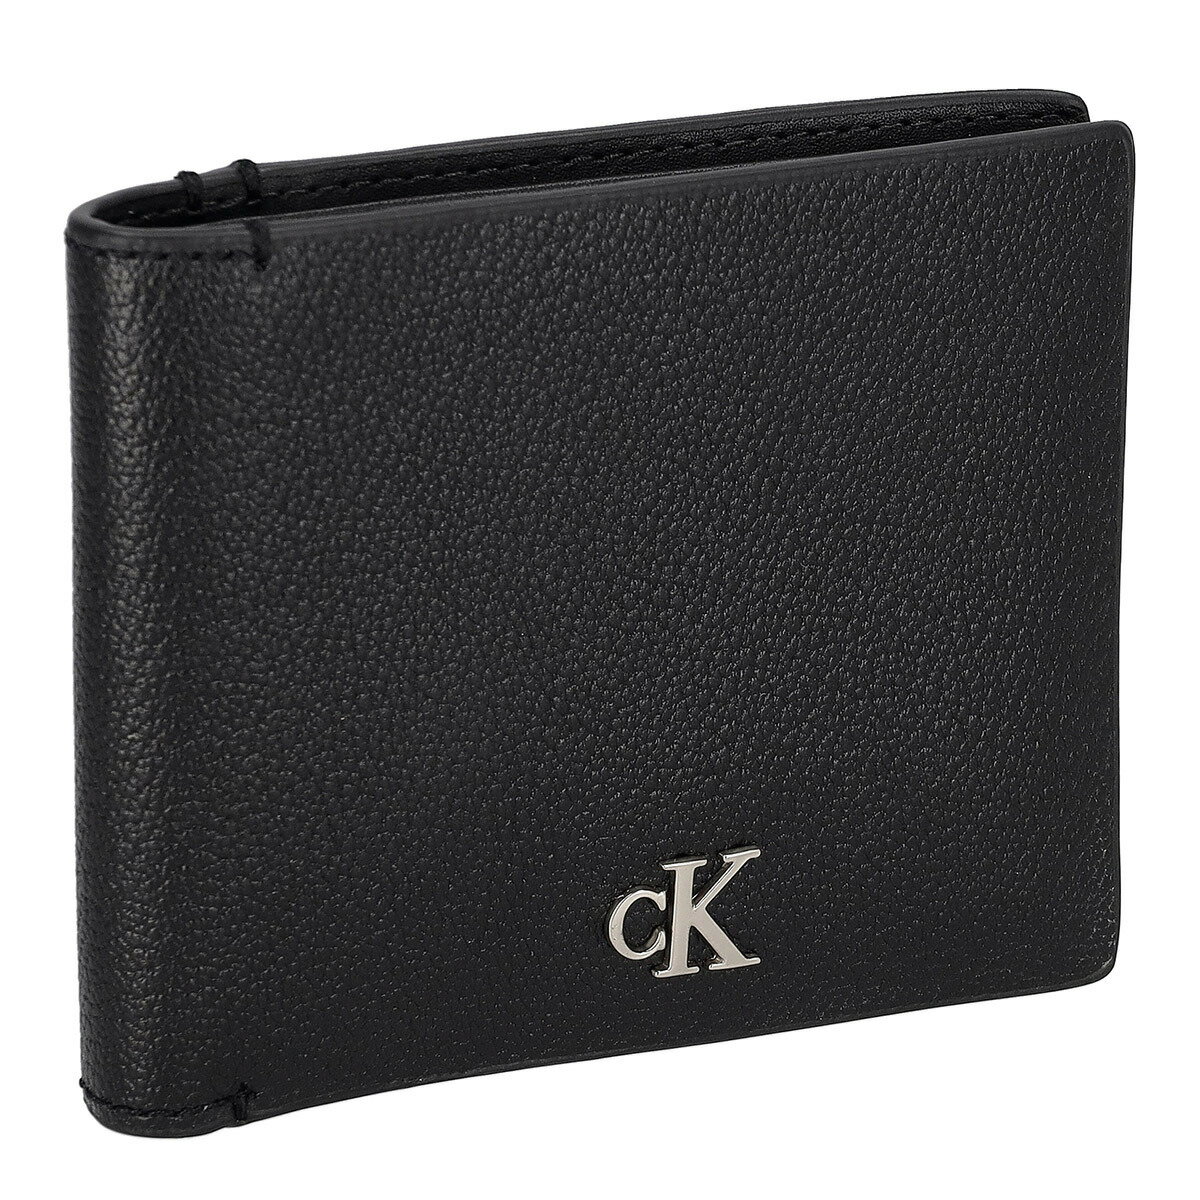 カルバンクライン ジーンズ Calvin Klein Jeans CK 財布 二つ折り財布 折りたたみ財布 K50K511095 BDS メンズ ブラック